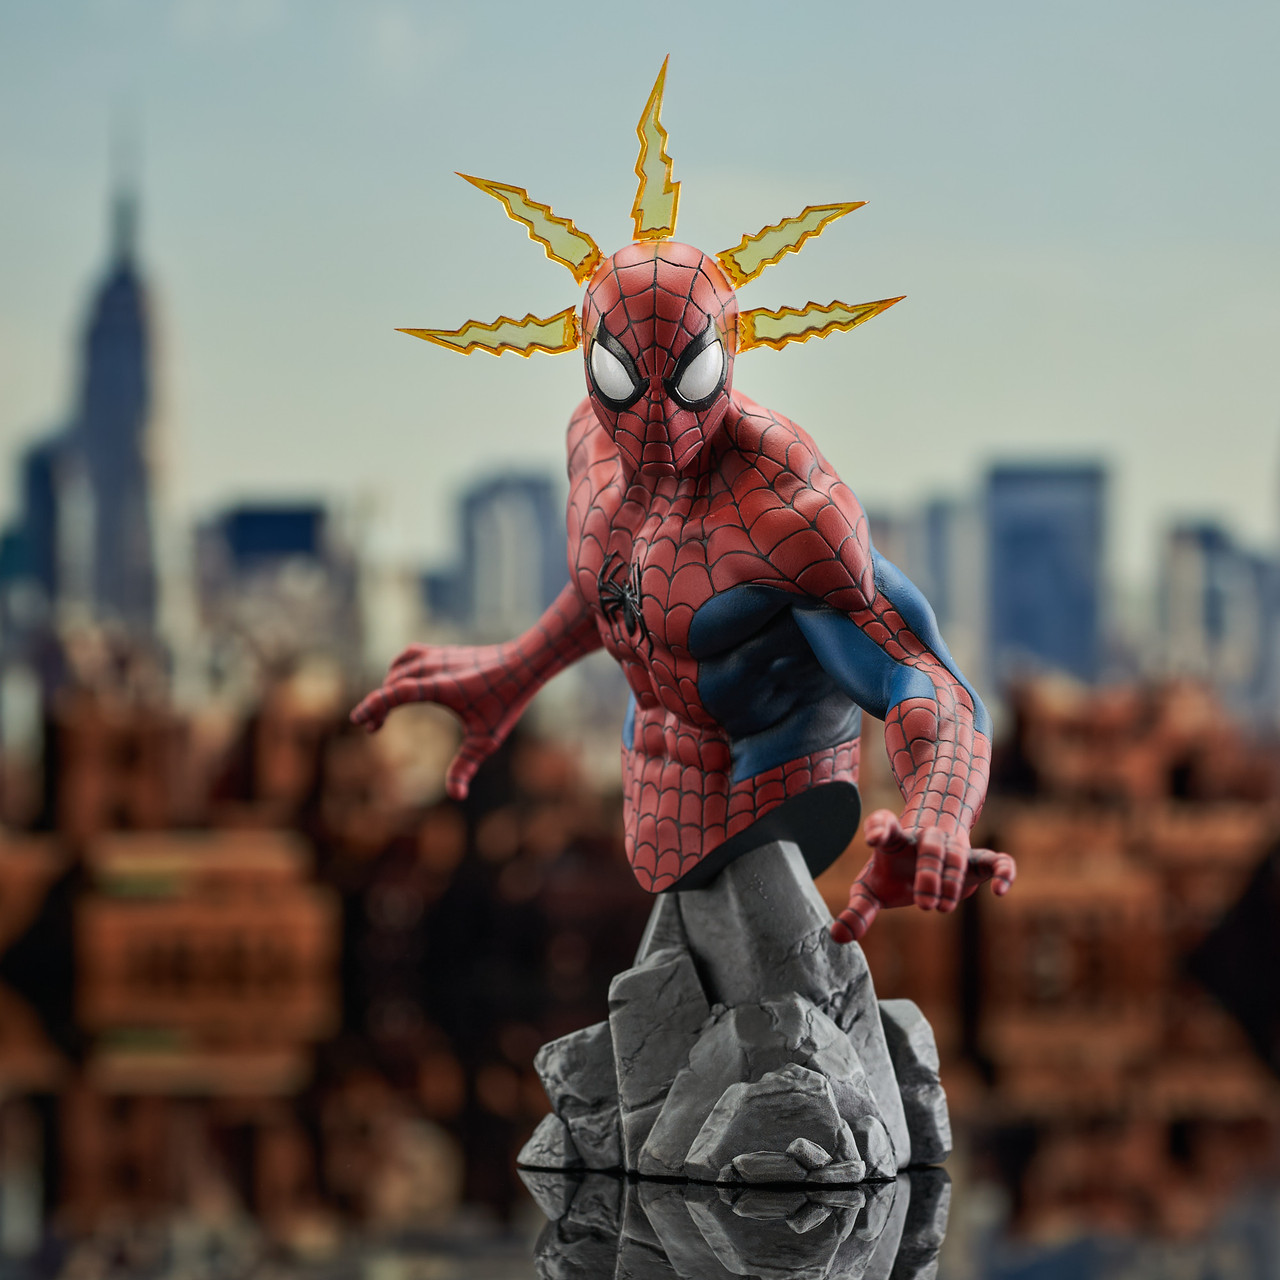 Spider-Man - Marvel